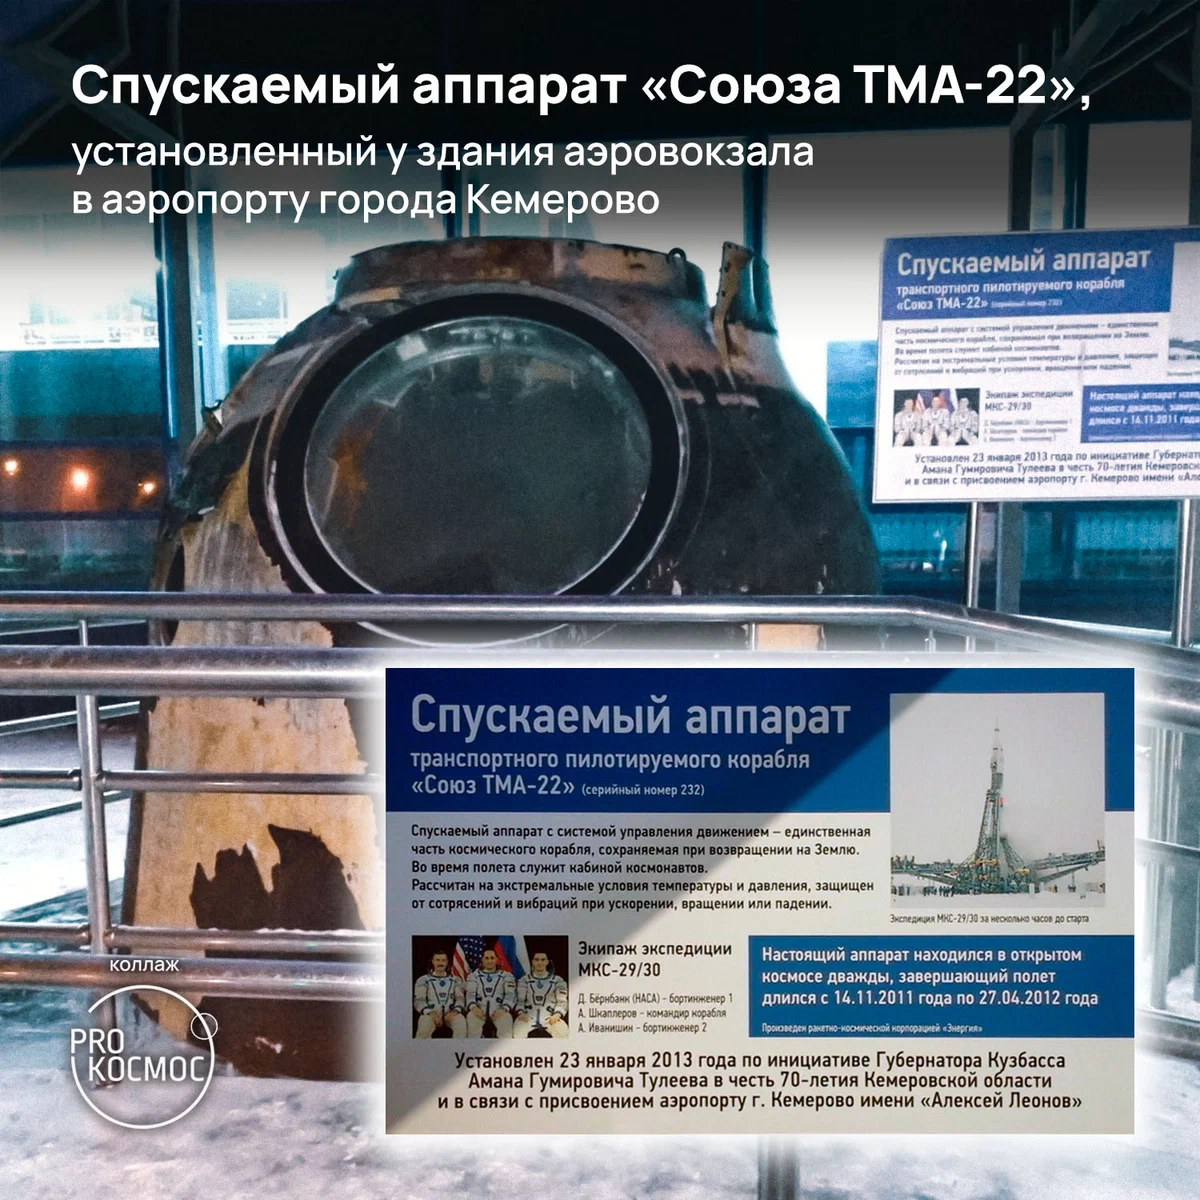 Рубежный запуск: «Союз ТМА-22» стал последним аналоговым и первым пилотируемым после завершения полётов шаттлов⁠⁠ height=1200px width=1200px